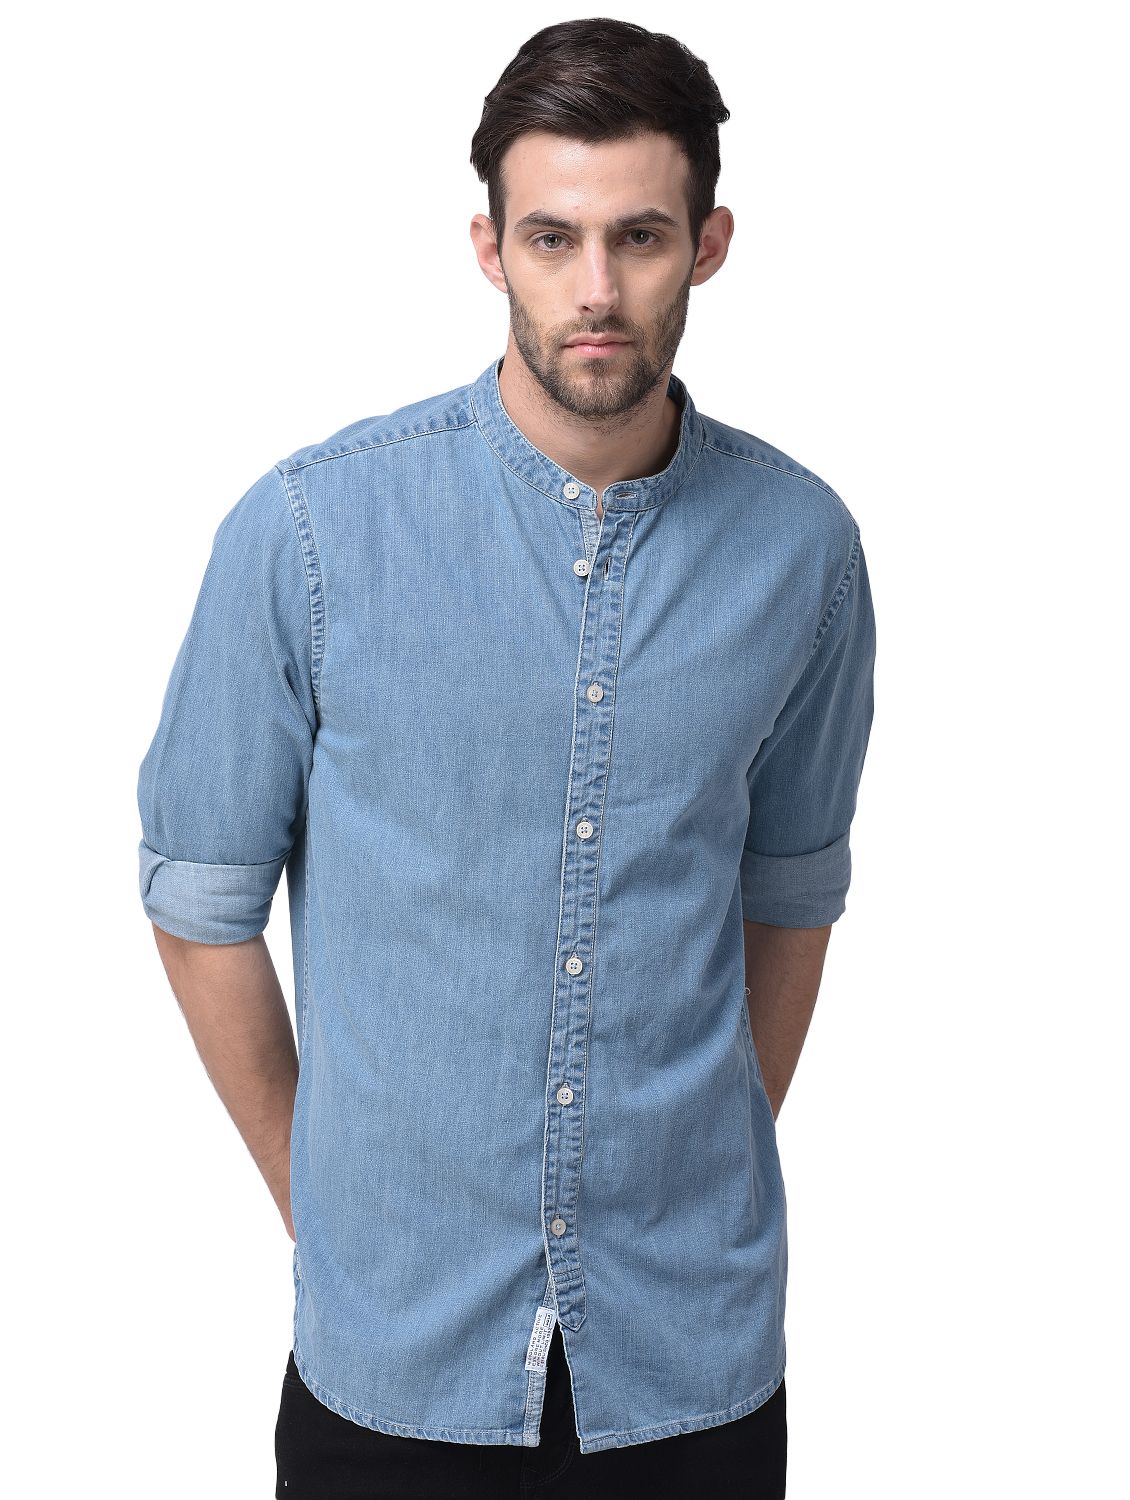 Light blue full sleeves shirt for men